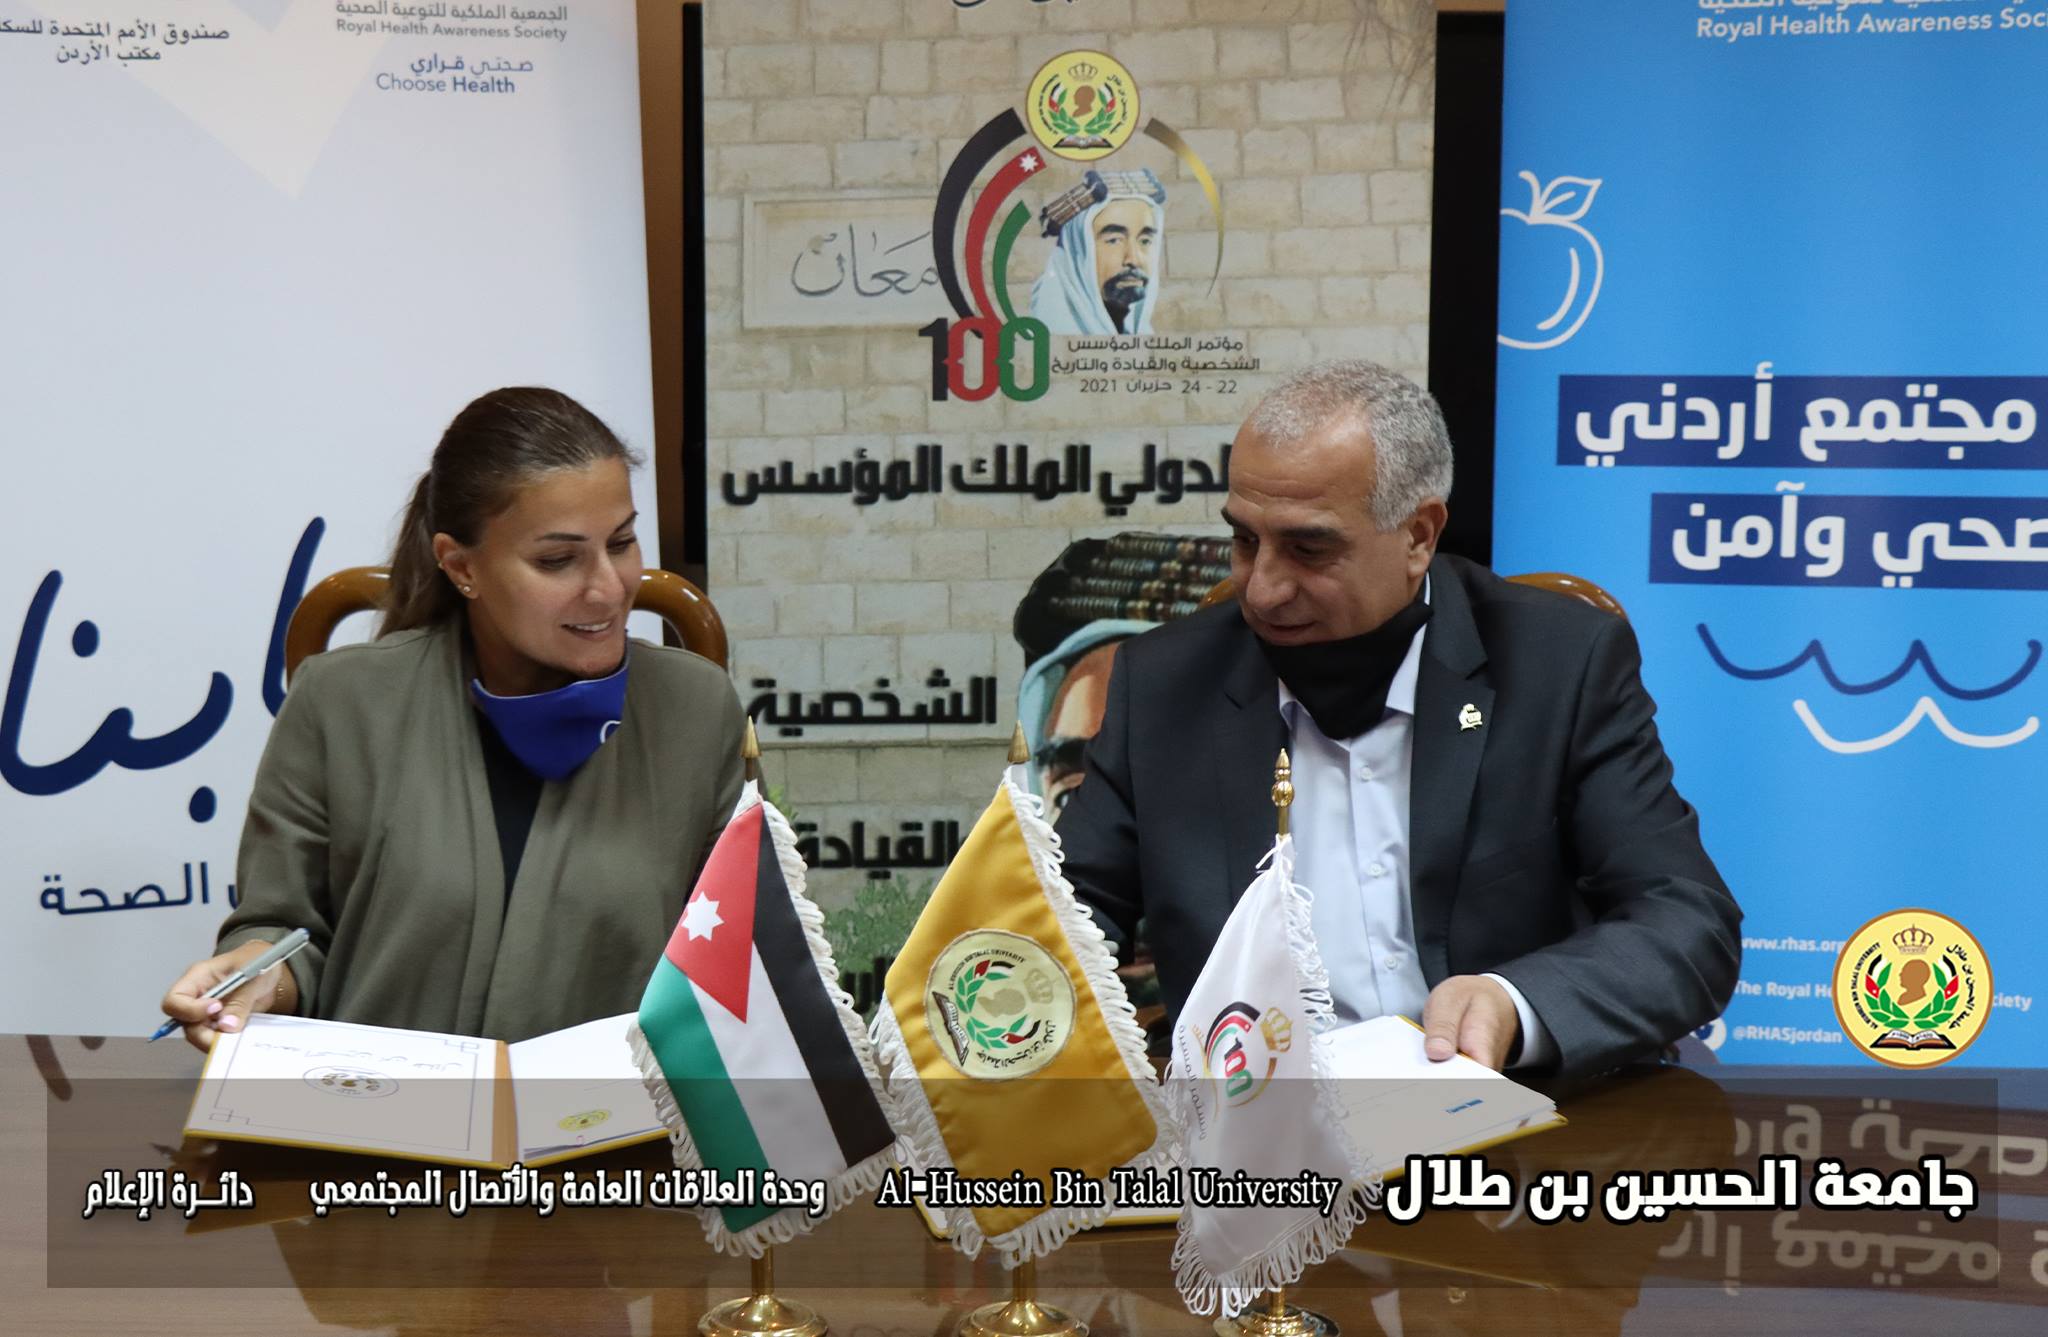 اتفاقية تعاون بين جامعة الحسين بن طلال والجمعية الملكية للتوعية الصحية.